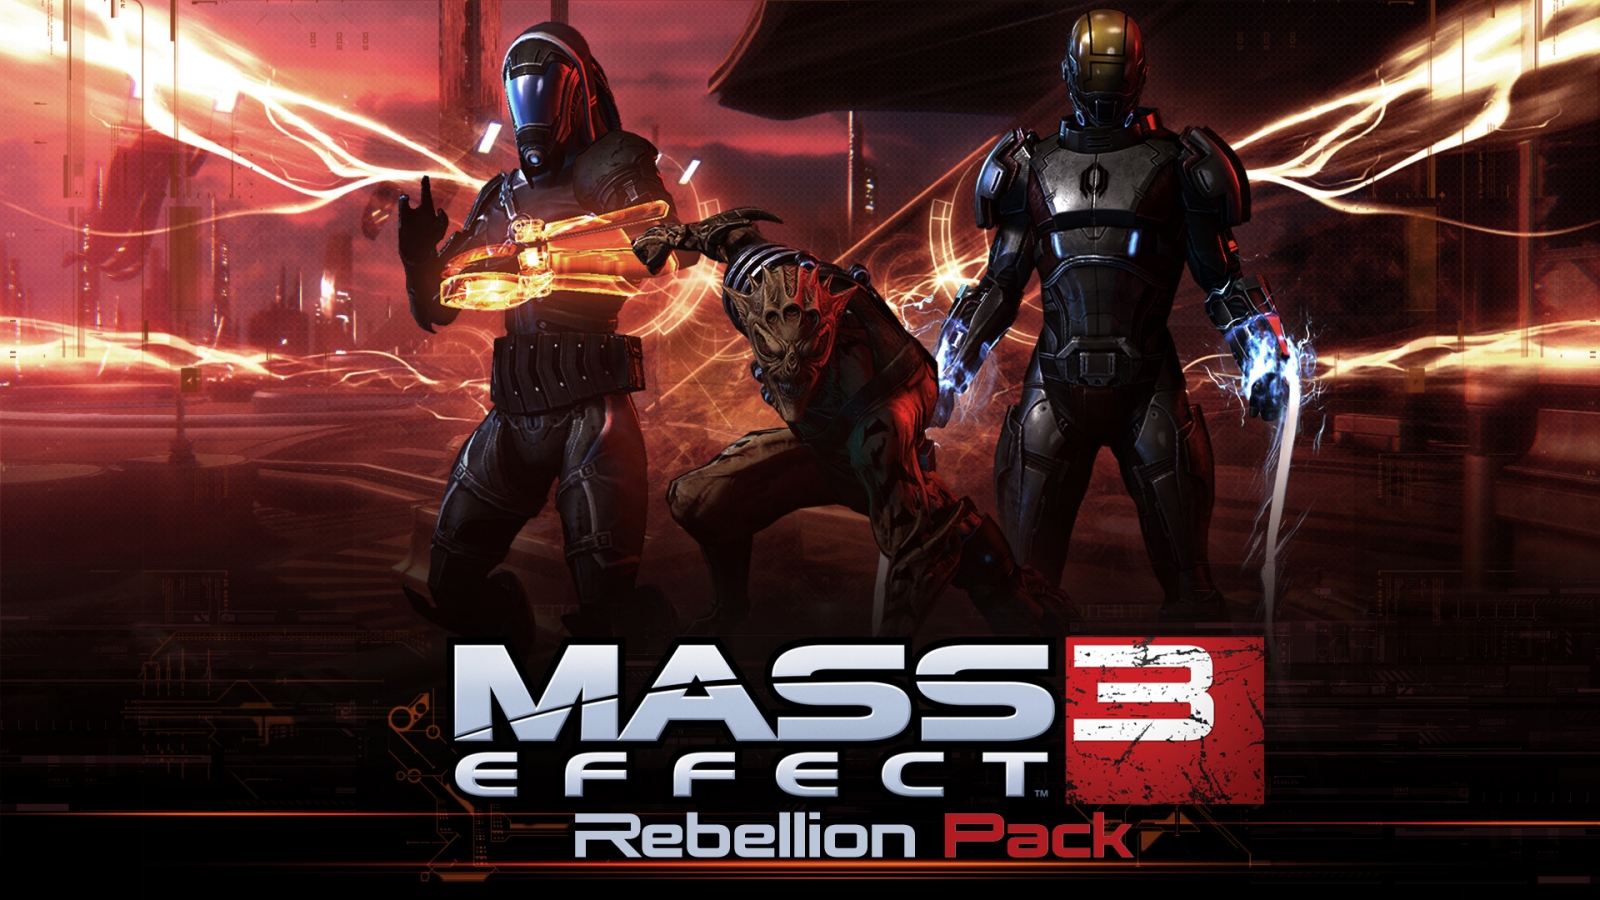 Mass Effect 3 Rebellion Pack for 1600 x 900 HDTV resolution